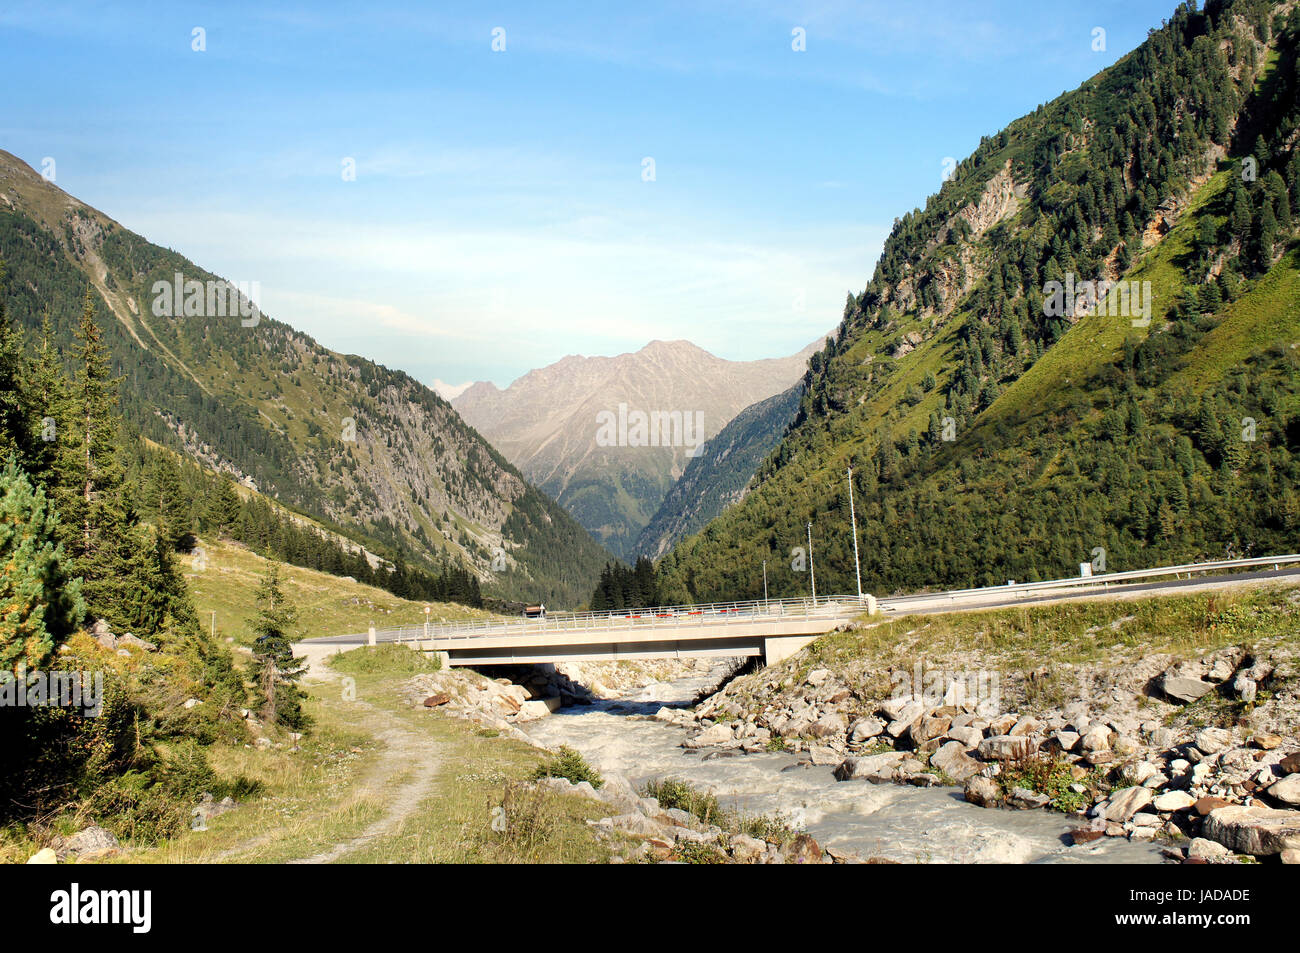 Brücke über einen Gletscherbach im Stubaital in Tirol, Oesterreich, steile Berge und grüne Hänge  Bridge over a glacial stream in the Stubai Valley in Tyrol, Austria, steep mountains and green slopes Stock Photo